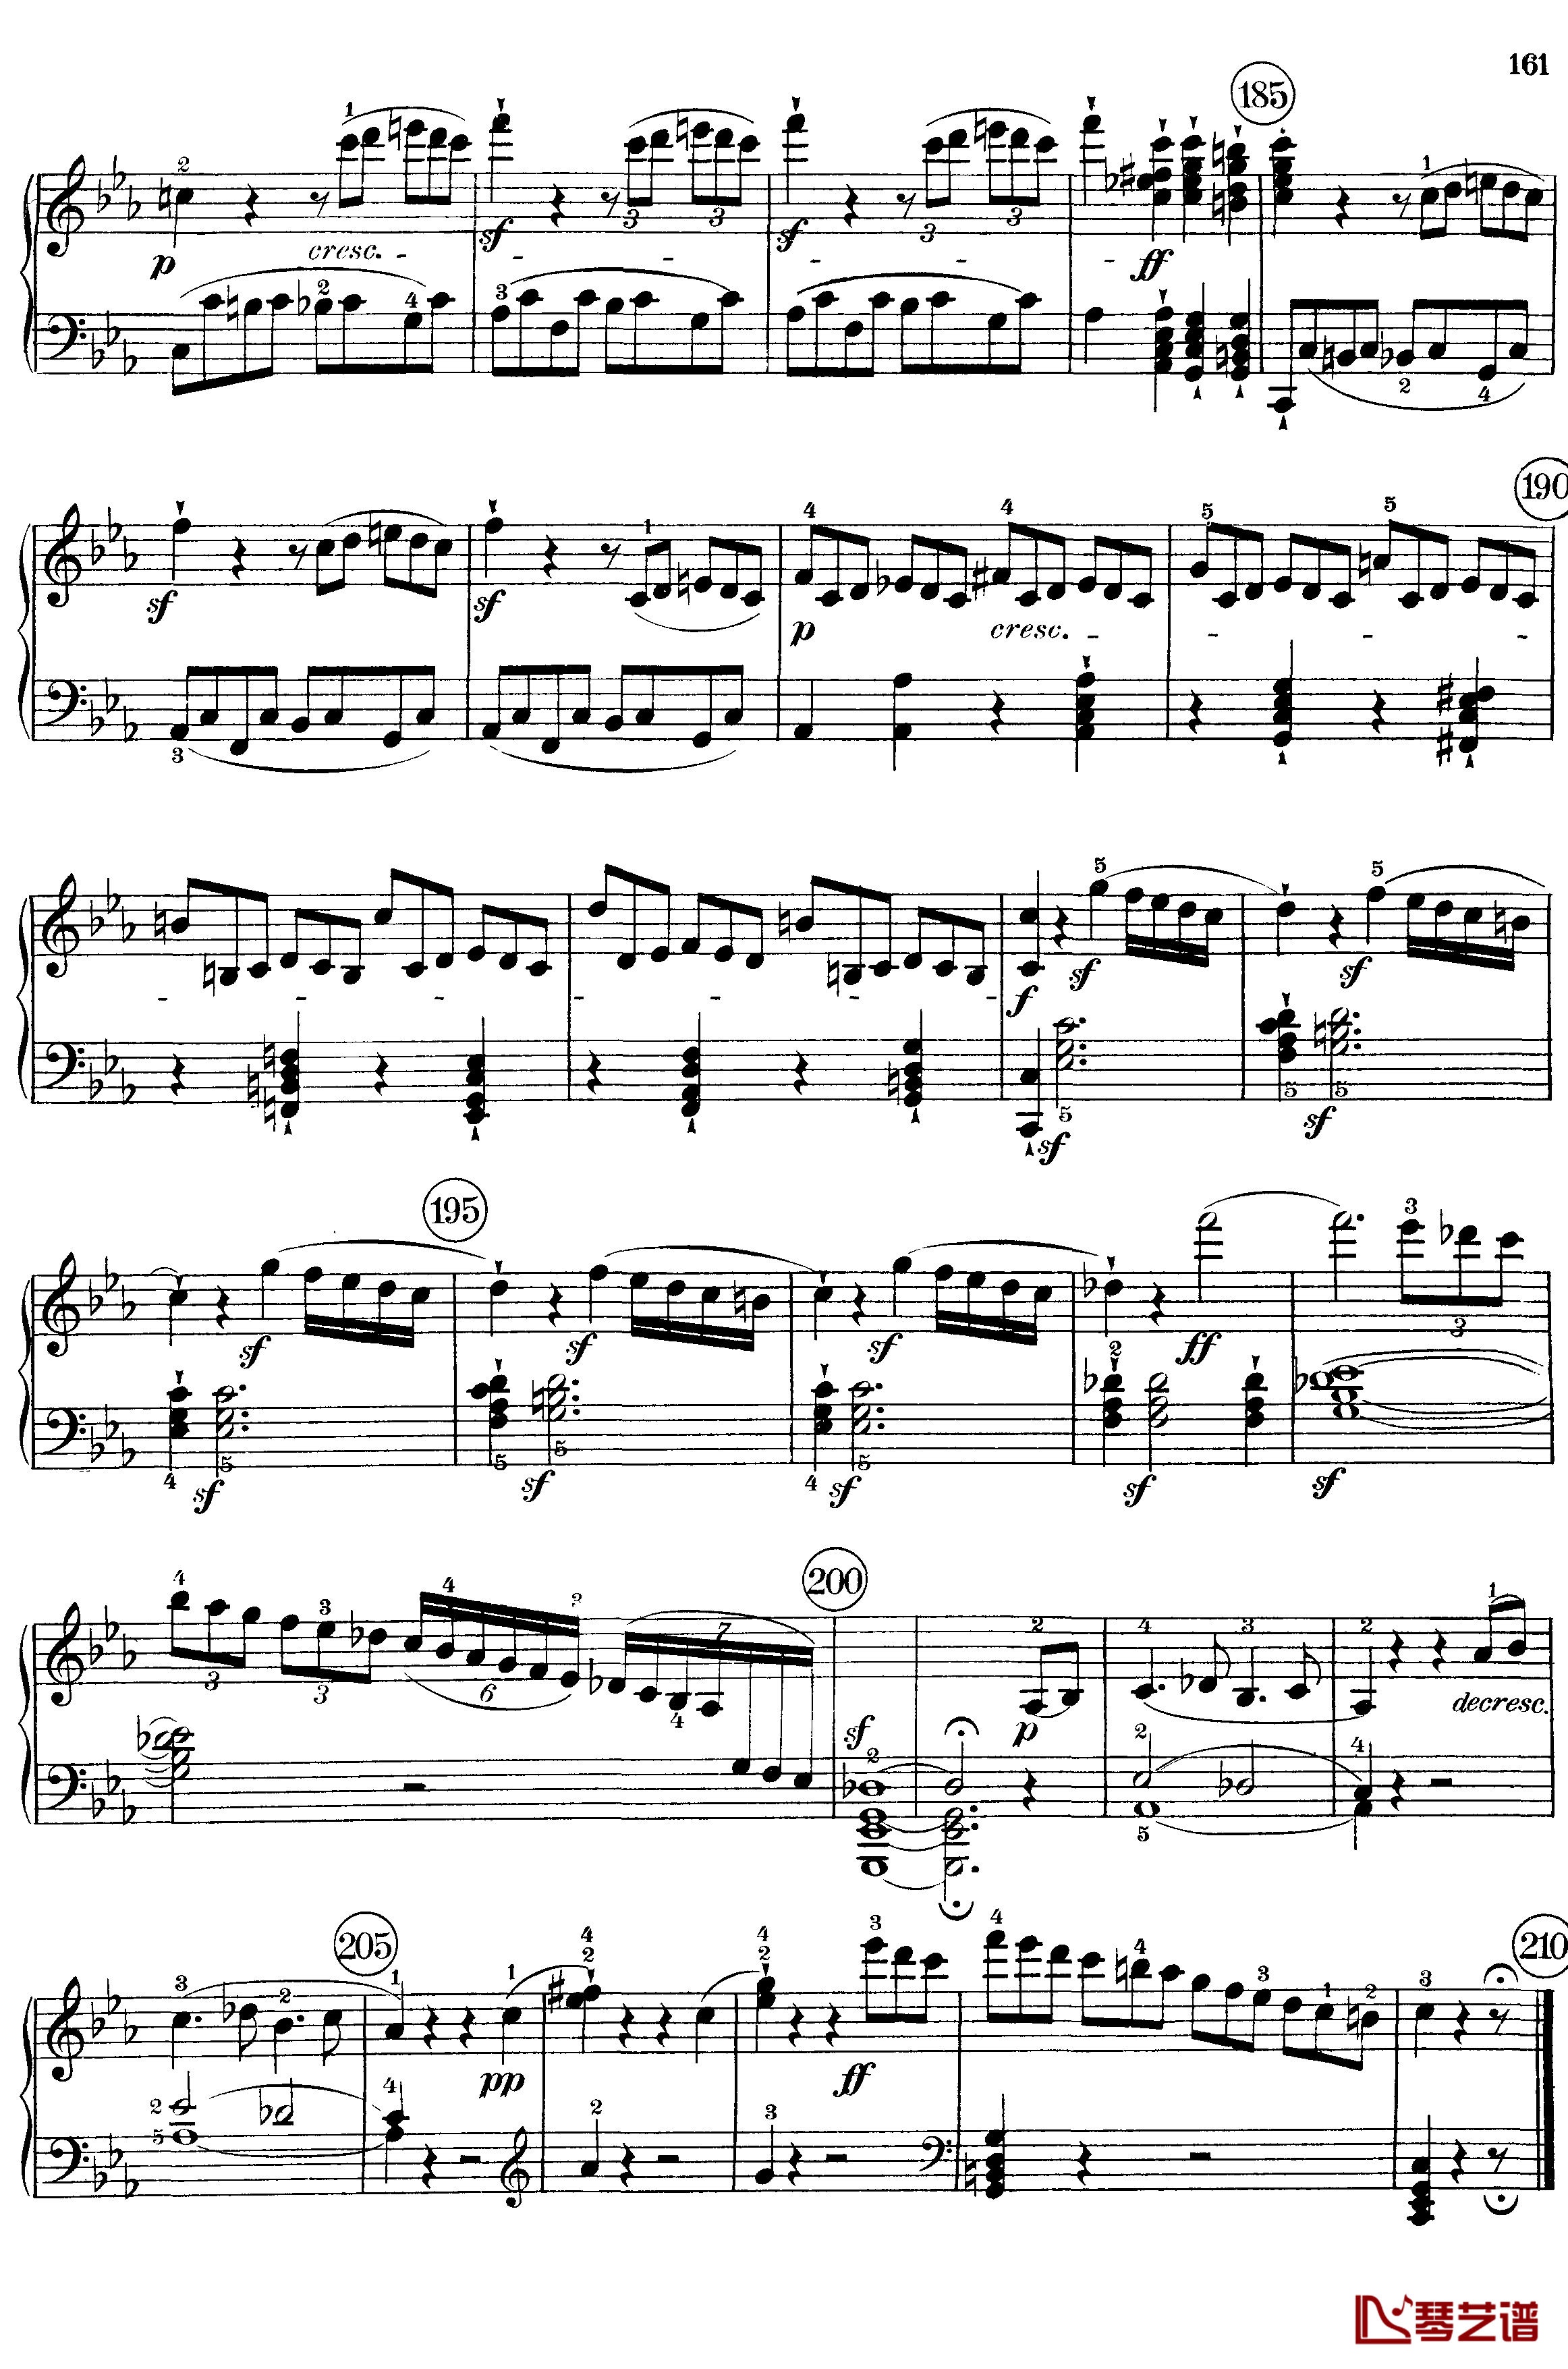 悲怆钢琴谱-c小调第八号钢琴奏鸣曲-全乐章-带指法版-贝多芬-beethoven19